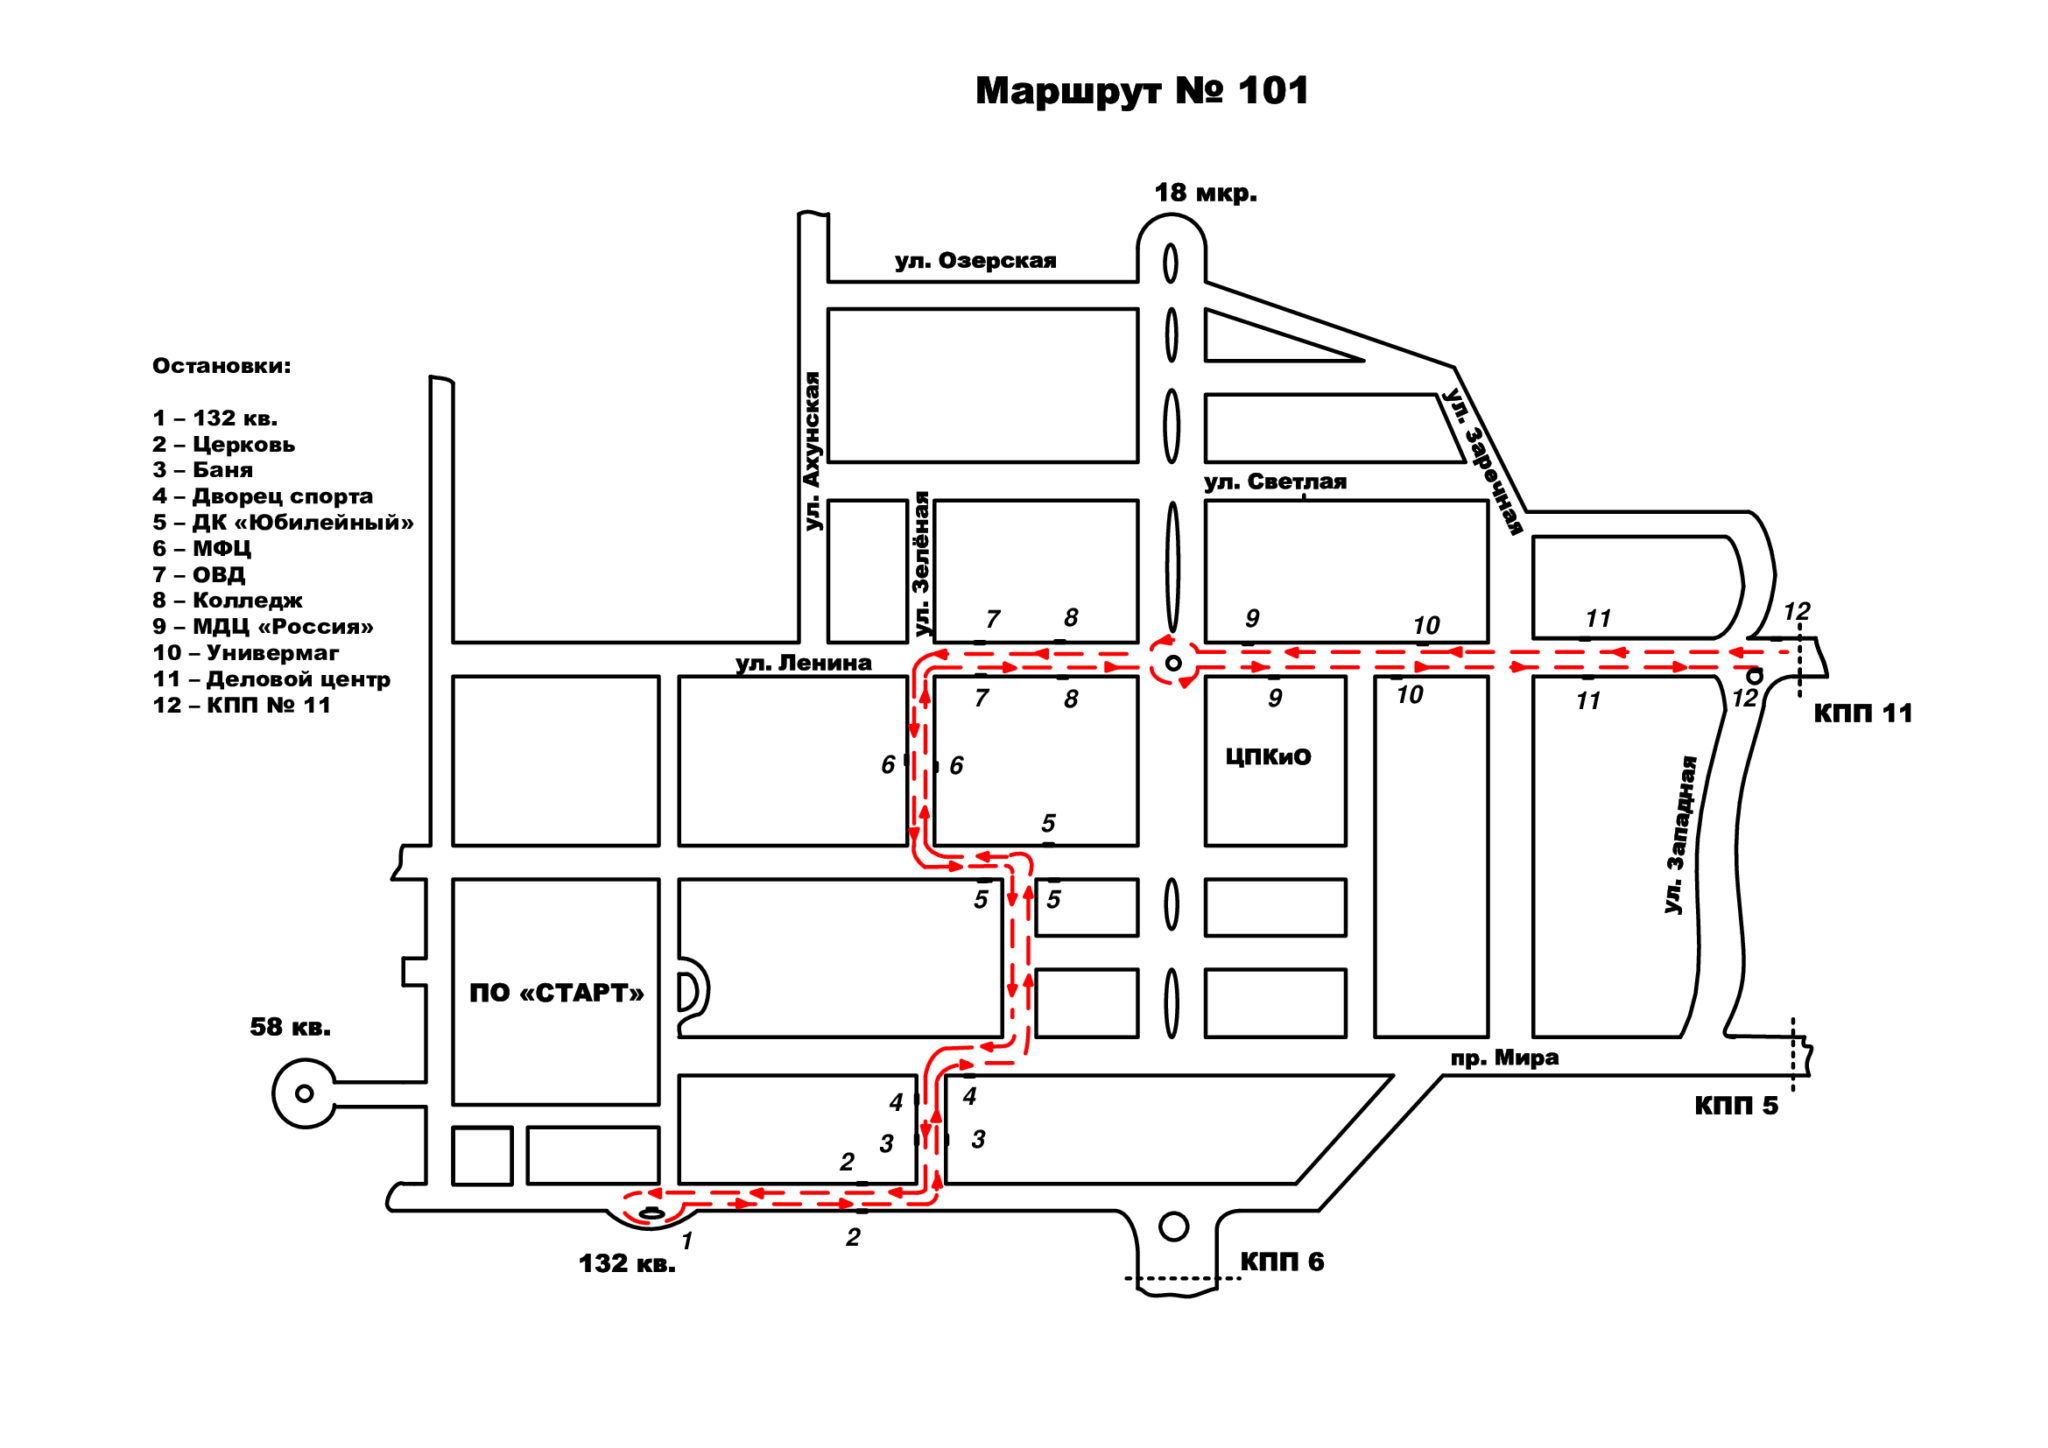 Схема маршрута 37